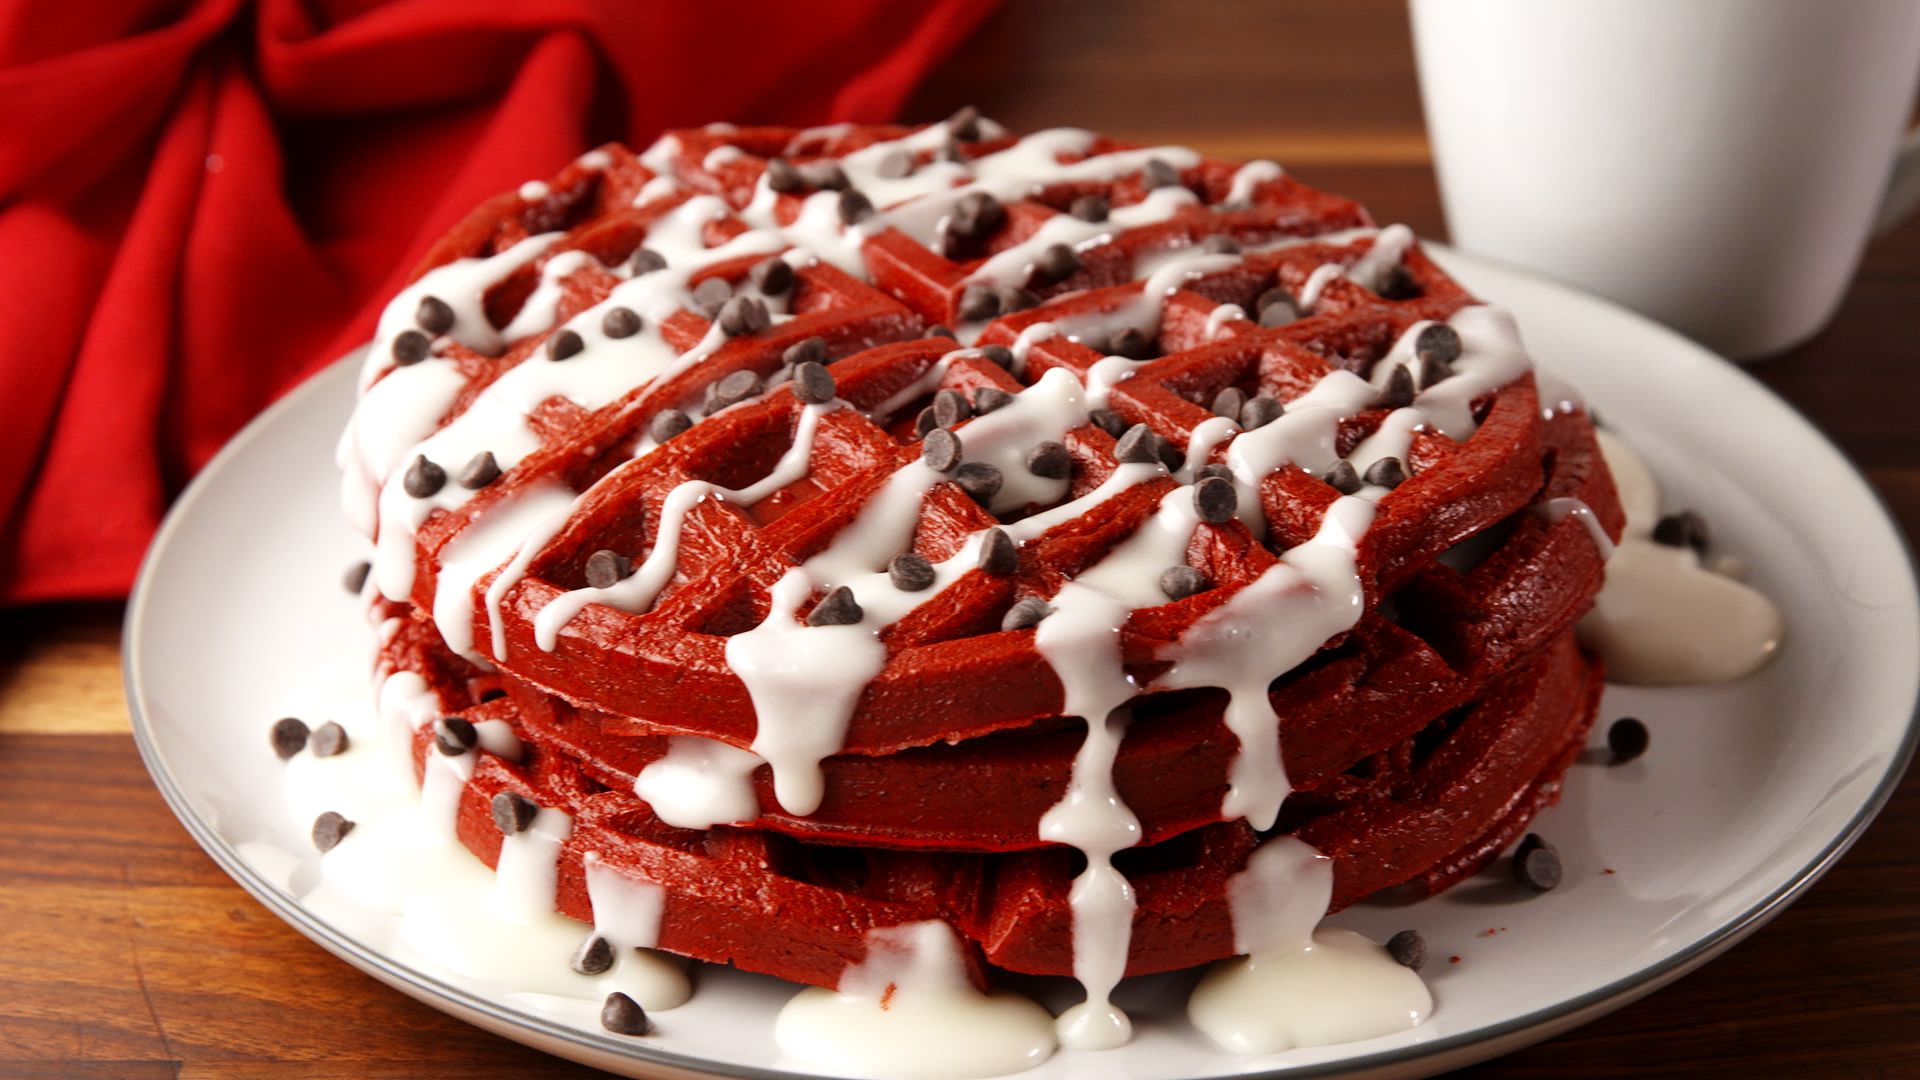 Best Red Velvet Waffle Recipe - How to Make Red Velvet Waffles